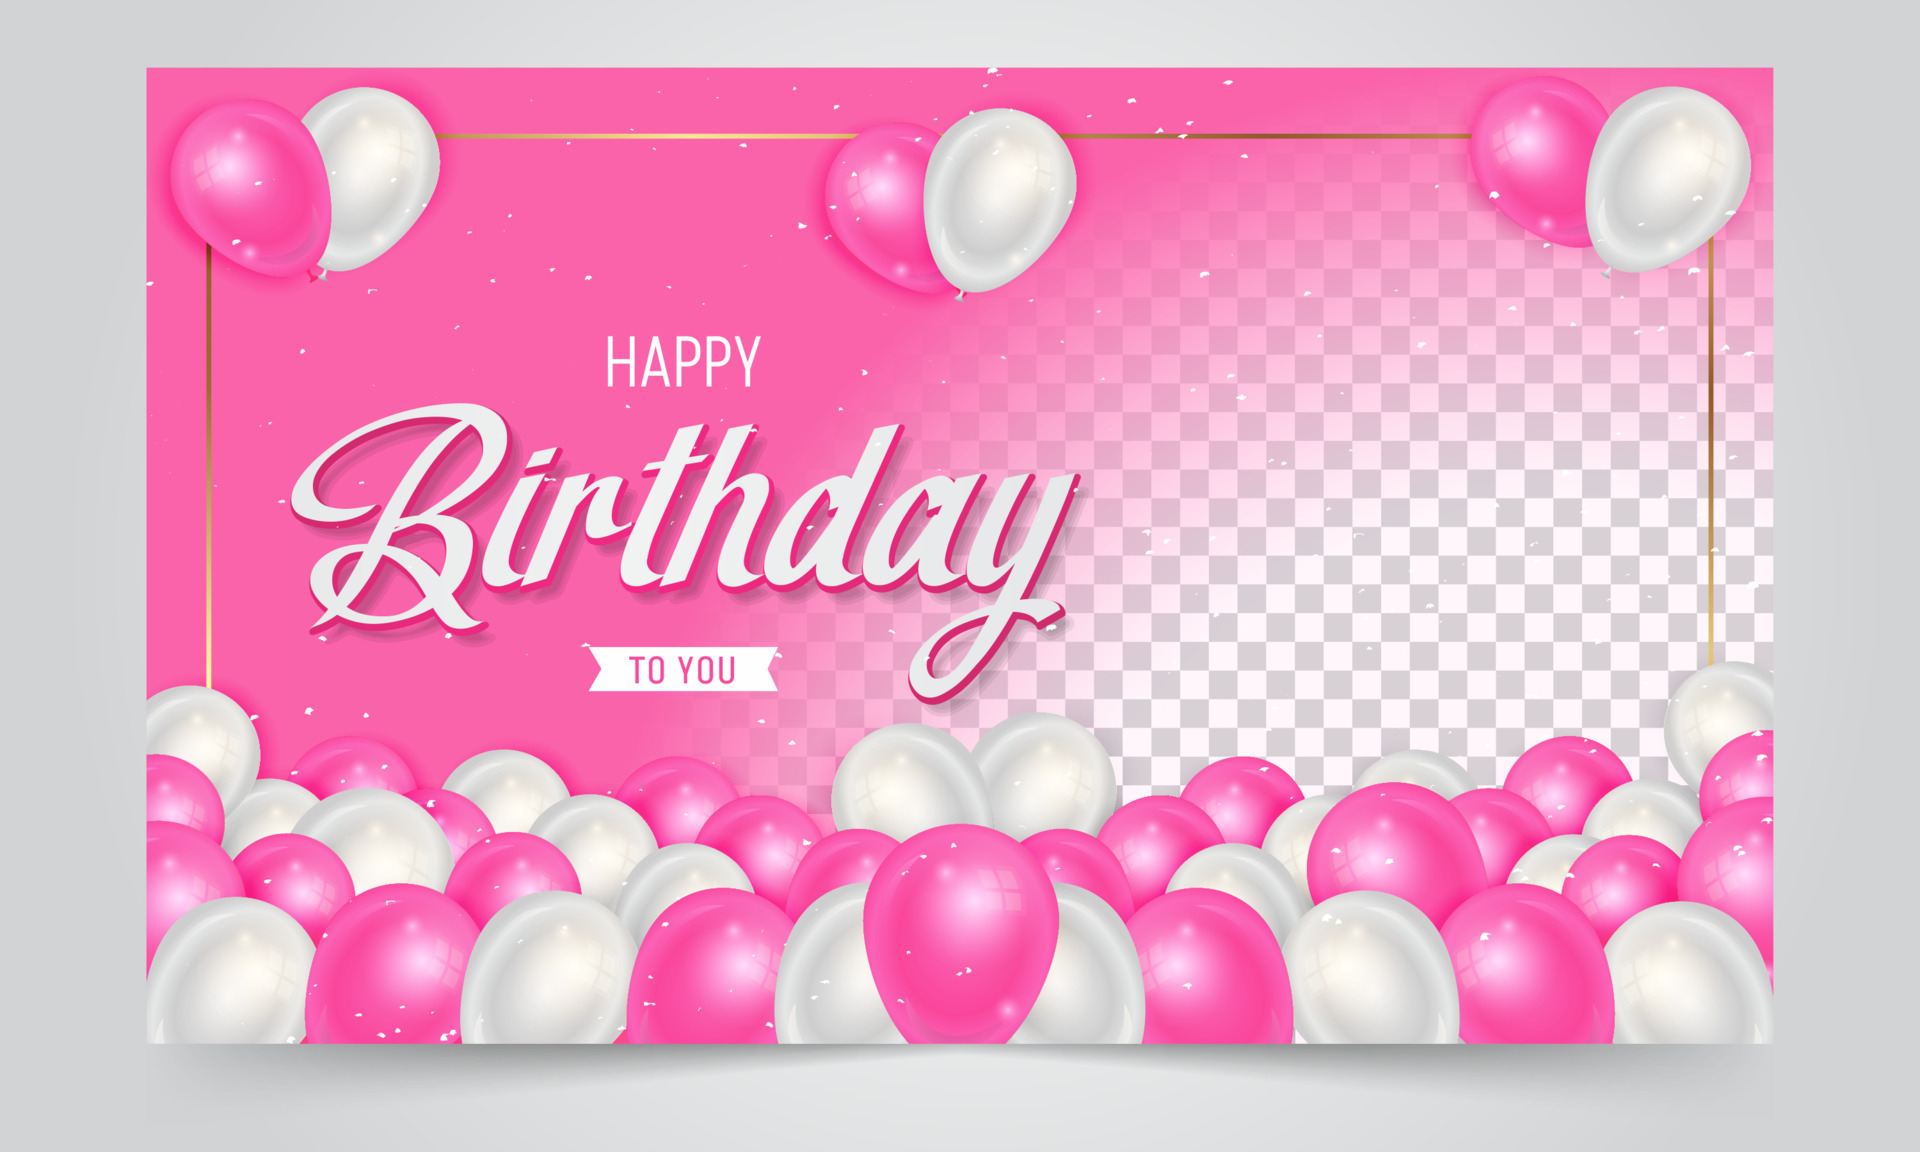 Nền_sinh_nhật_hồng: Với sự nổi tiếng của màu hồng, bữa tiệc sinh nhật của bạn không thể thiếu những nền hình sinh nhật hồng đầy màu sắc. Hãy truy cập vào bộ sưu tập của chúng tôi để tìm ra nền hình sinh nhật phù hợp nhất cho bữa tiệc của bạn.